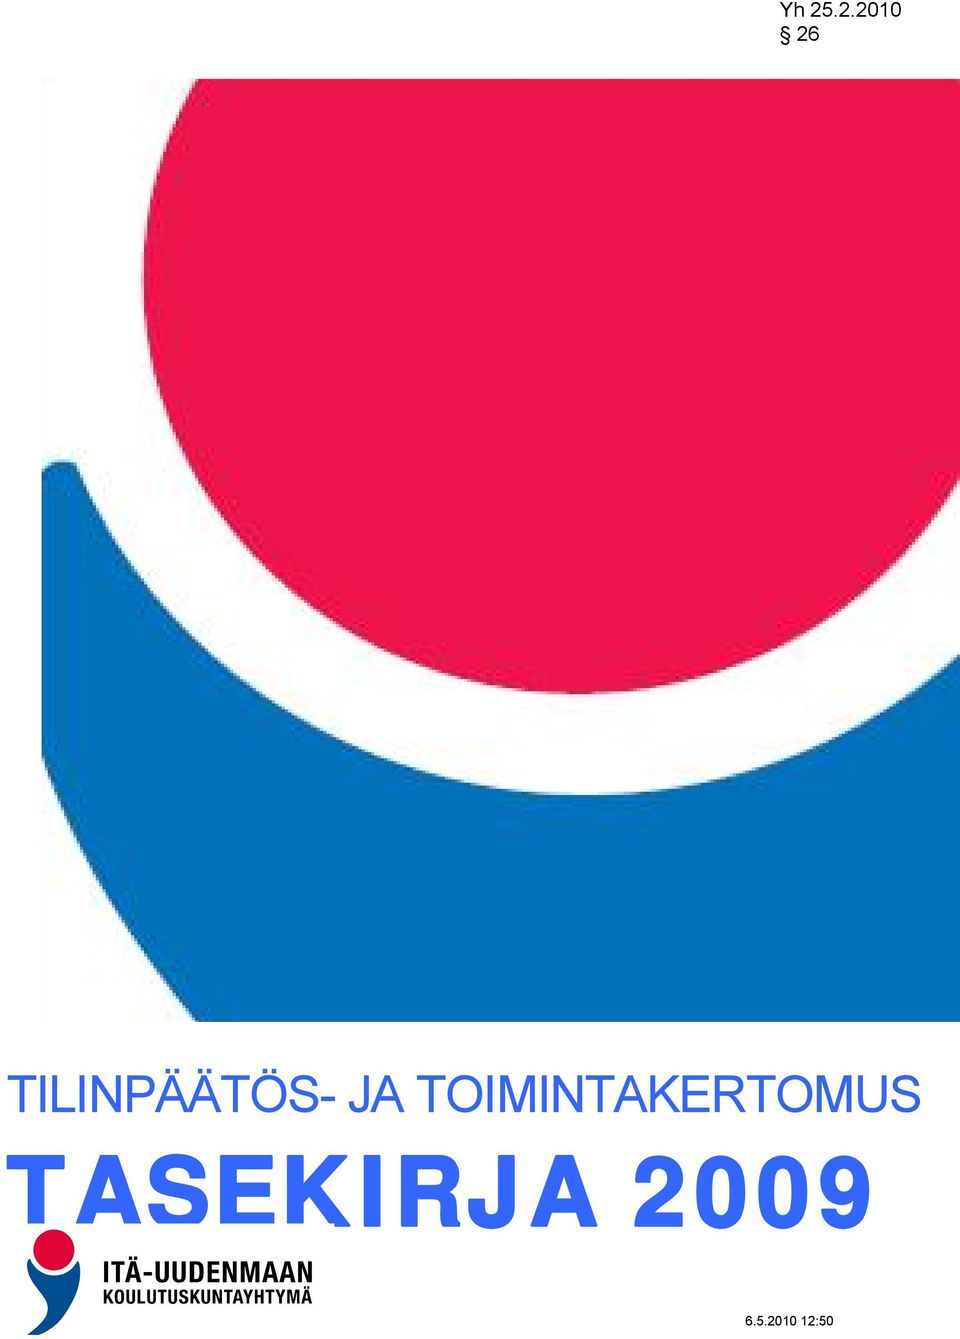 TILINPÄÄTÖS- JA